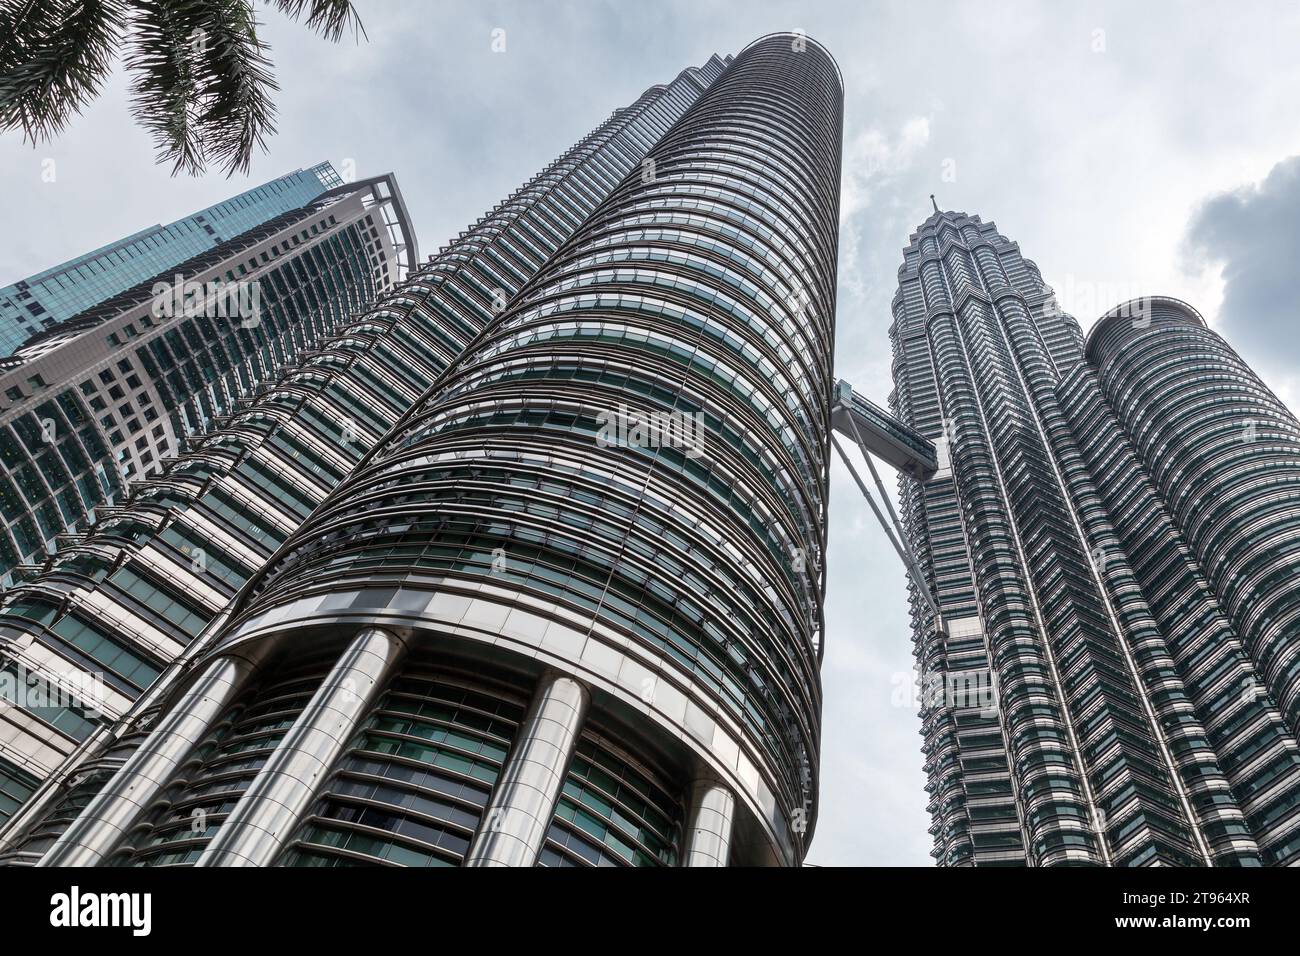 Kuala Lumpur, Malaisie - 25 novembre 2019 : Skyline de la ville avec les tours jumelles Petronas sous un ciel nuageux Banque D'Images